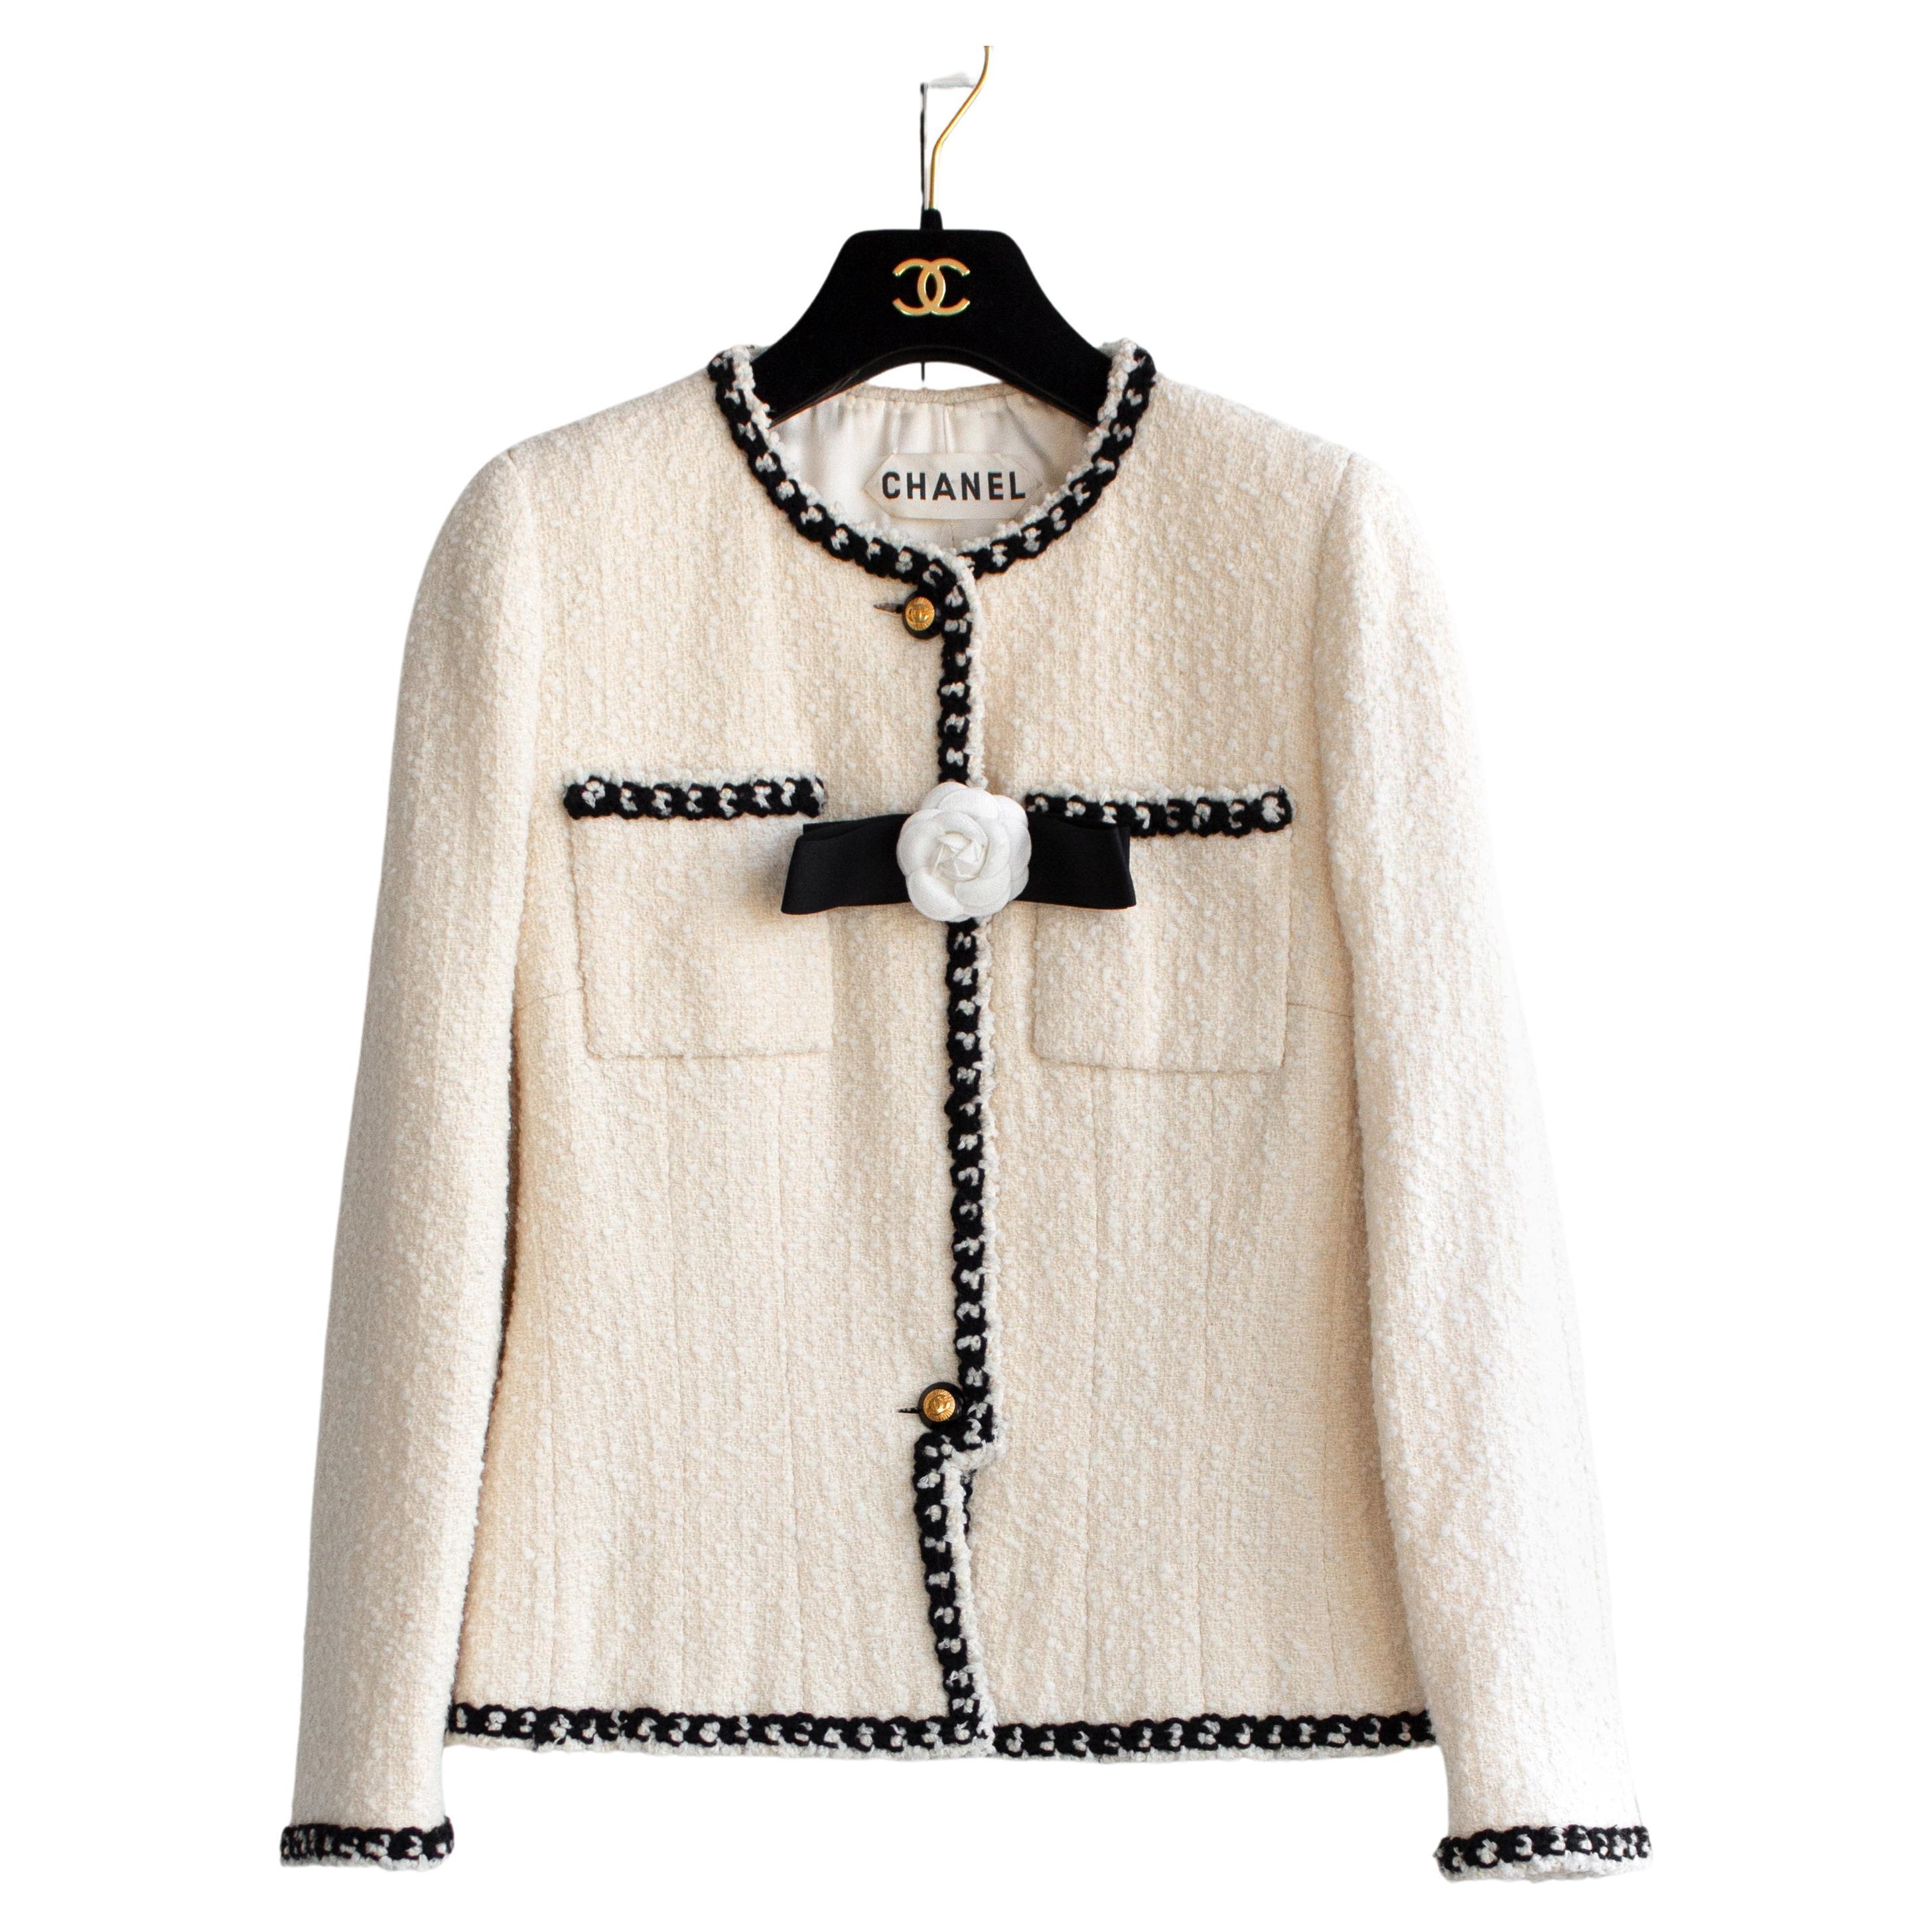 Chanel Vintage Haute Couture Frühjahr/Sommer 1995 Ecru Weiß Schwarz Tweed Jacke